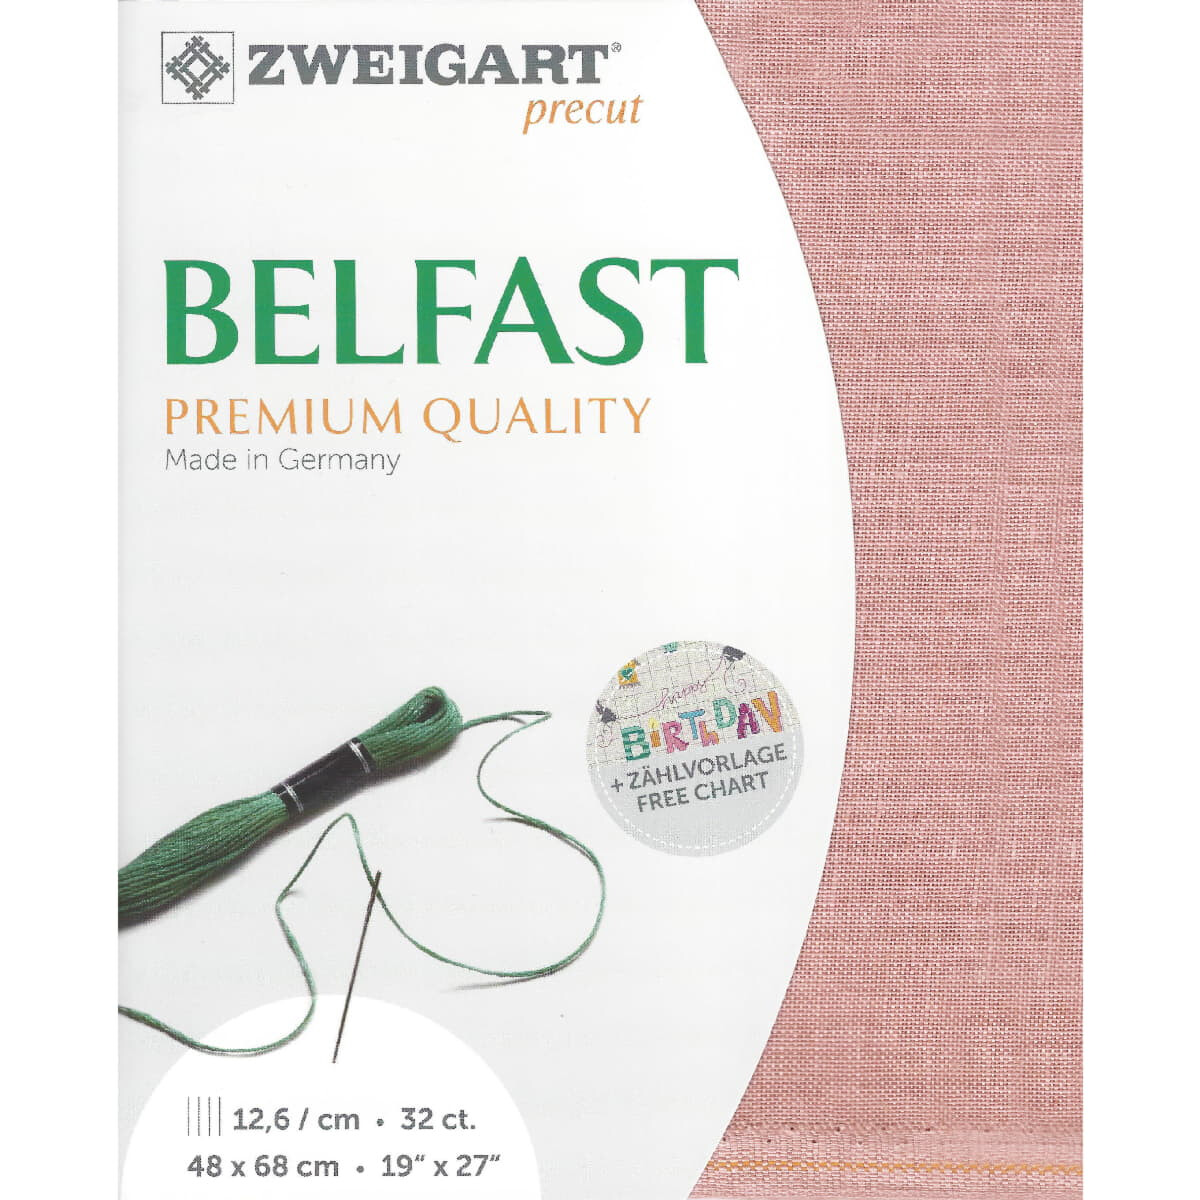 Tissu Evenweave Belfast Zweigart Precute 32 ct. 3609 100%...